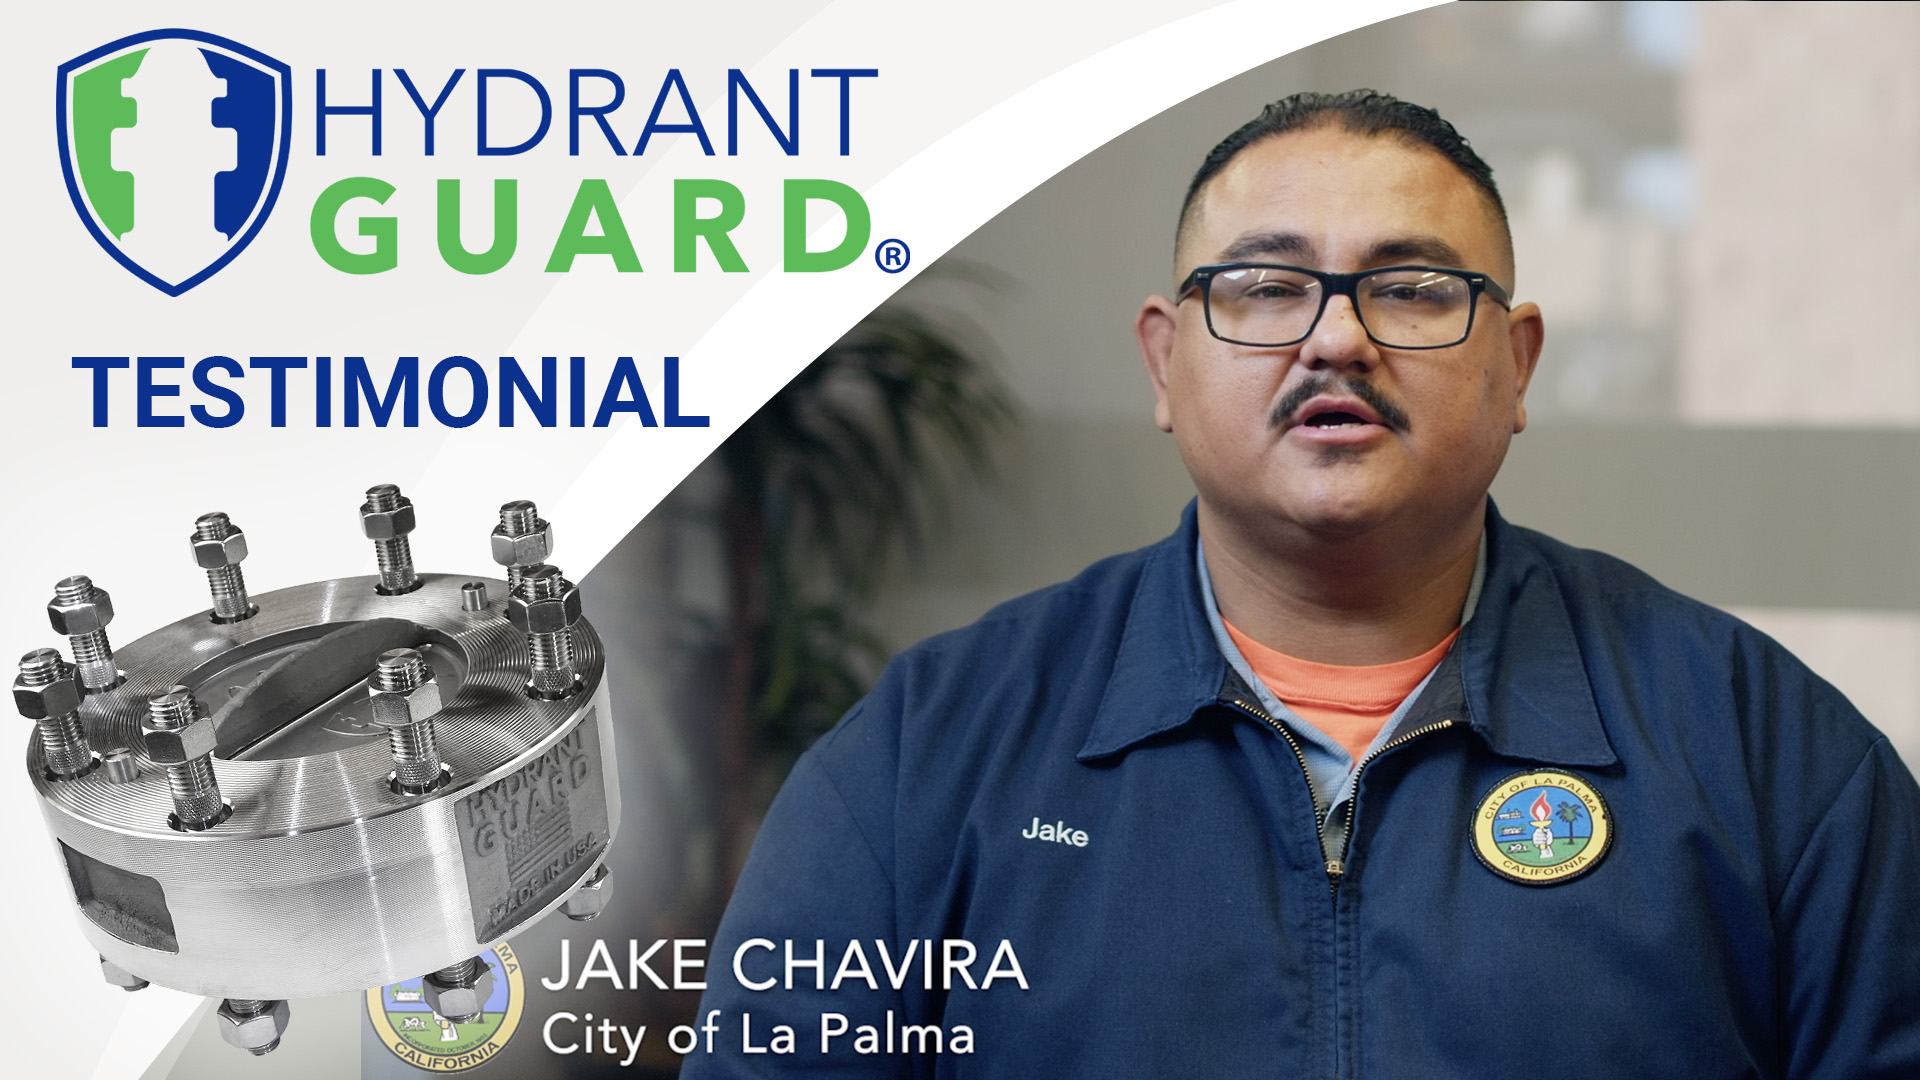 Hydrant Guard testimonial - Jake Chavira, City of La Palma